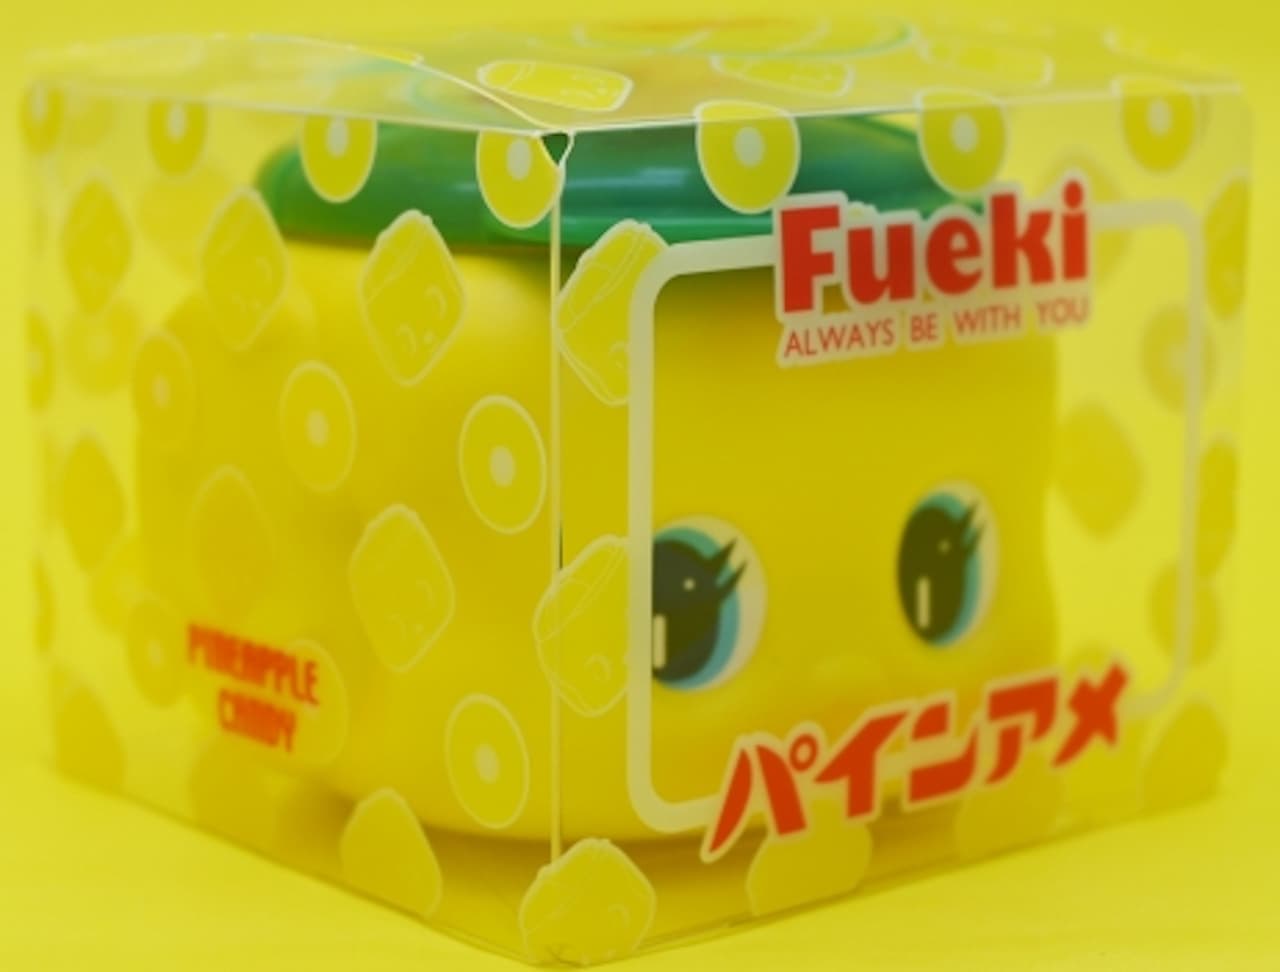 "Fueki x Pine Ame" with pine candy in Fueki-kun